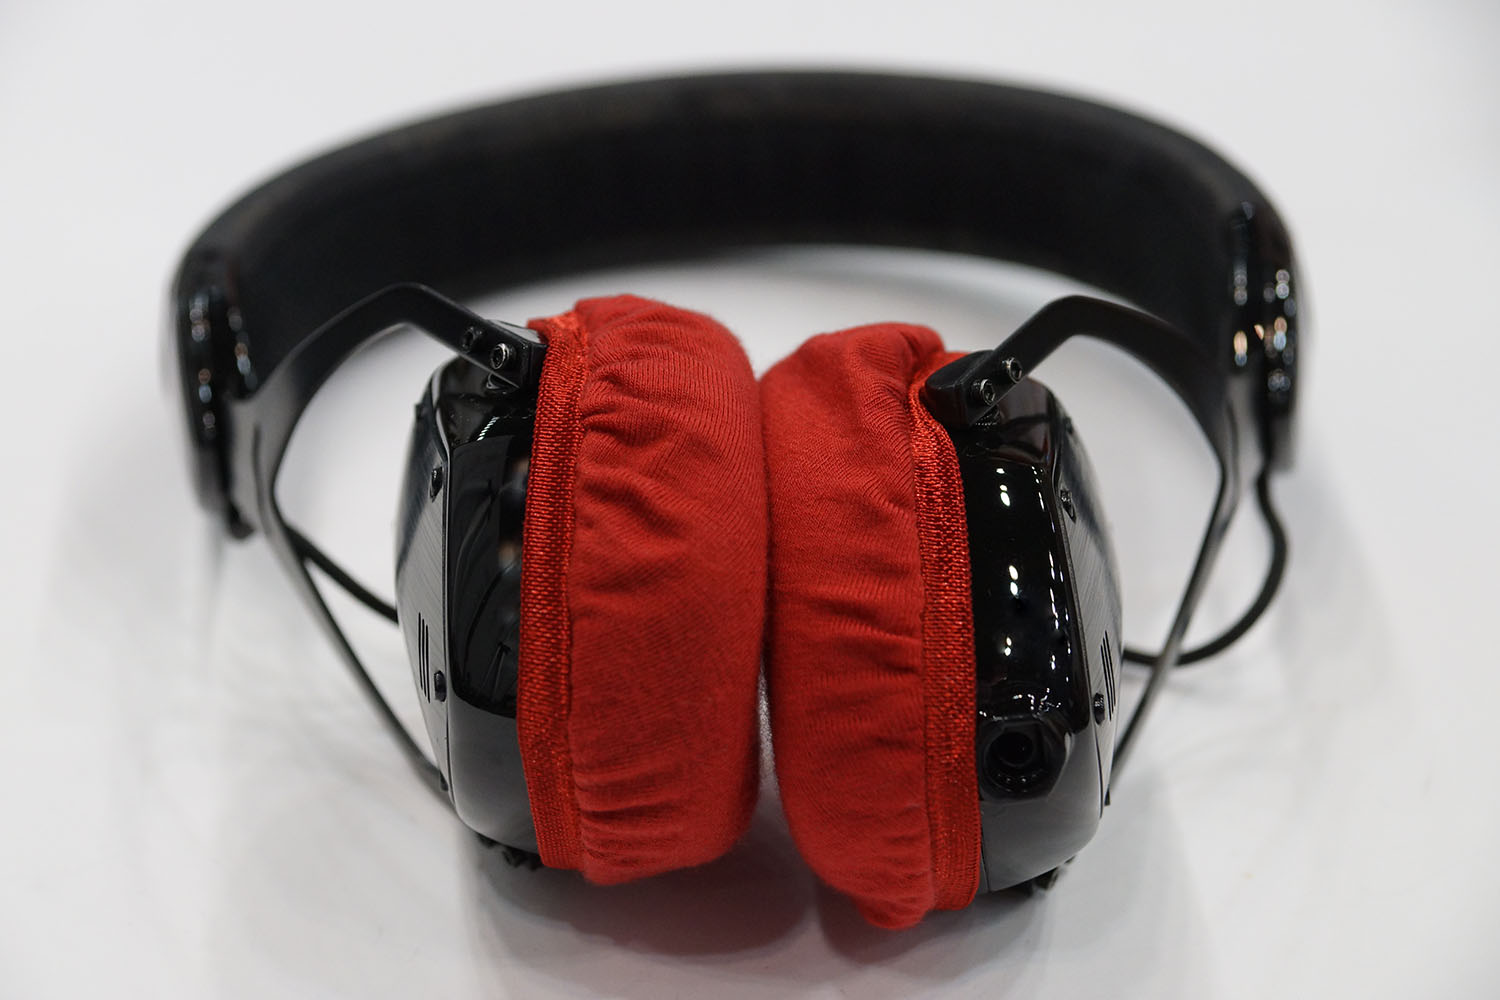 V-MODA CROSSFADE M-80 and protection: Super Stretch Headphone Cover mimimamo